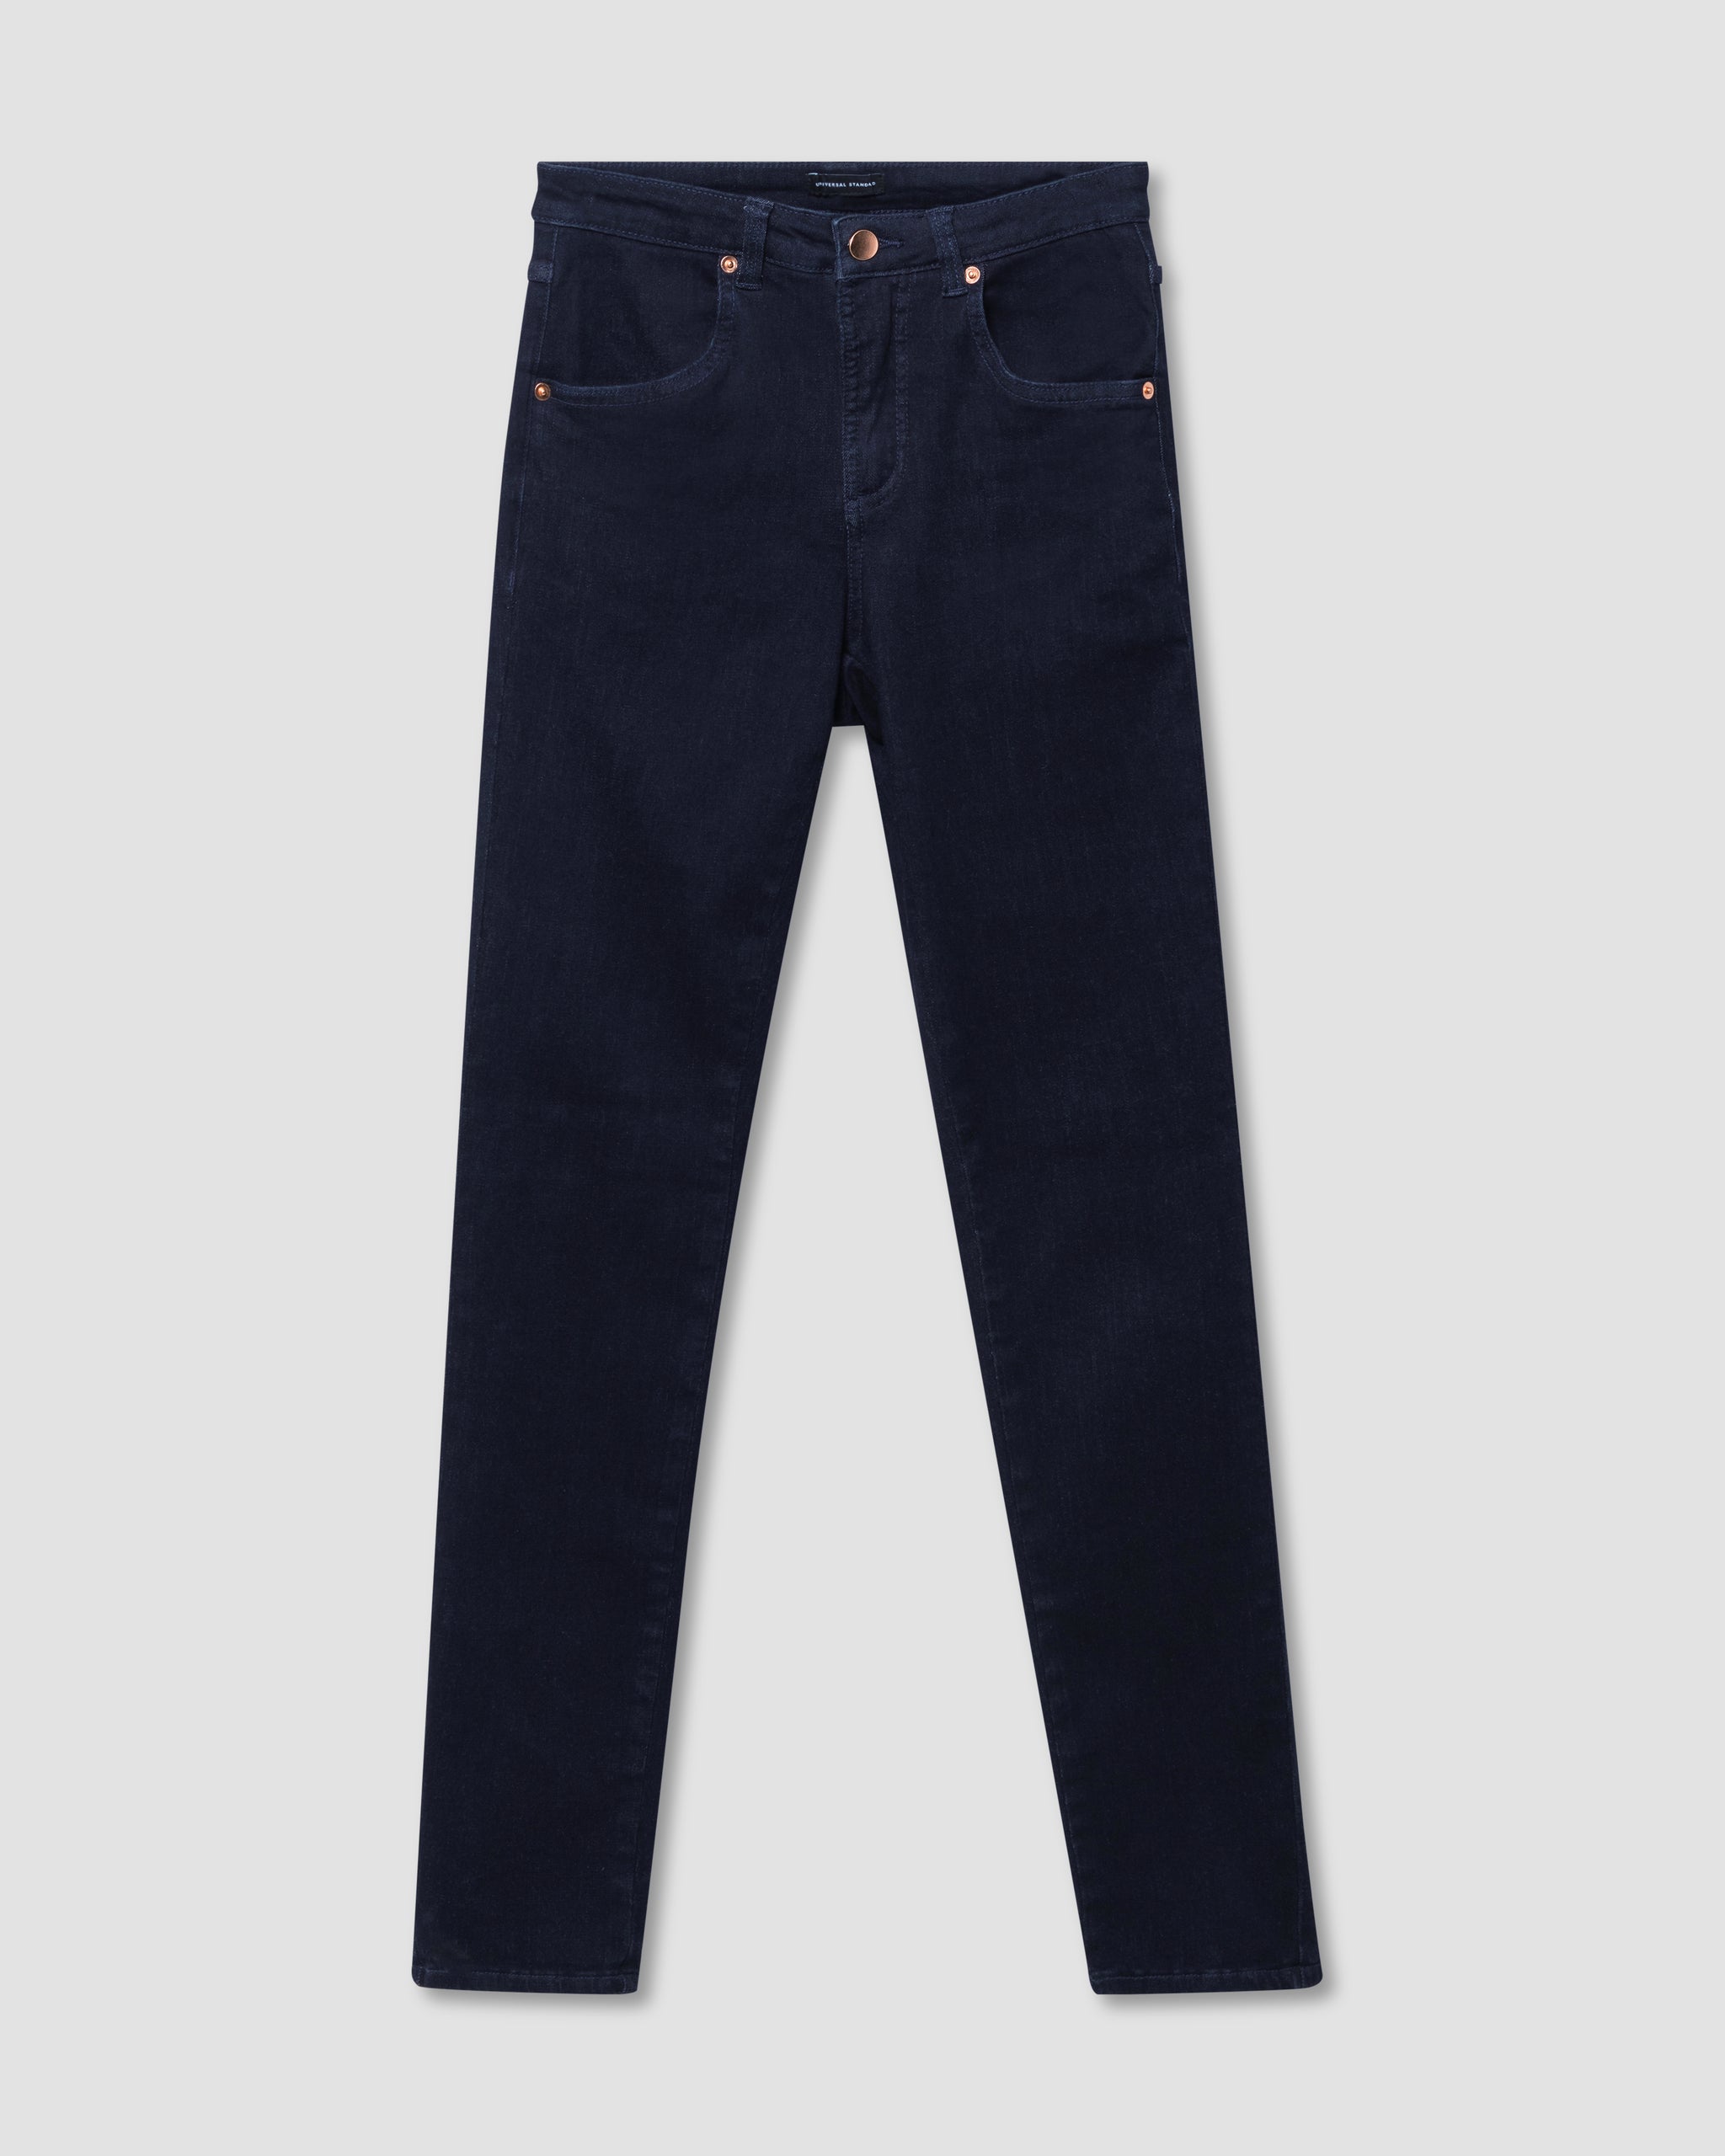 Seine High Rise Skinny Jeans 27 Inch - Dark Indigo